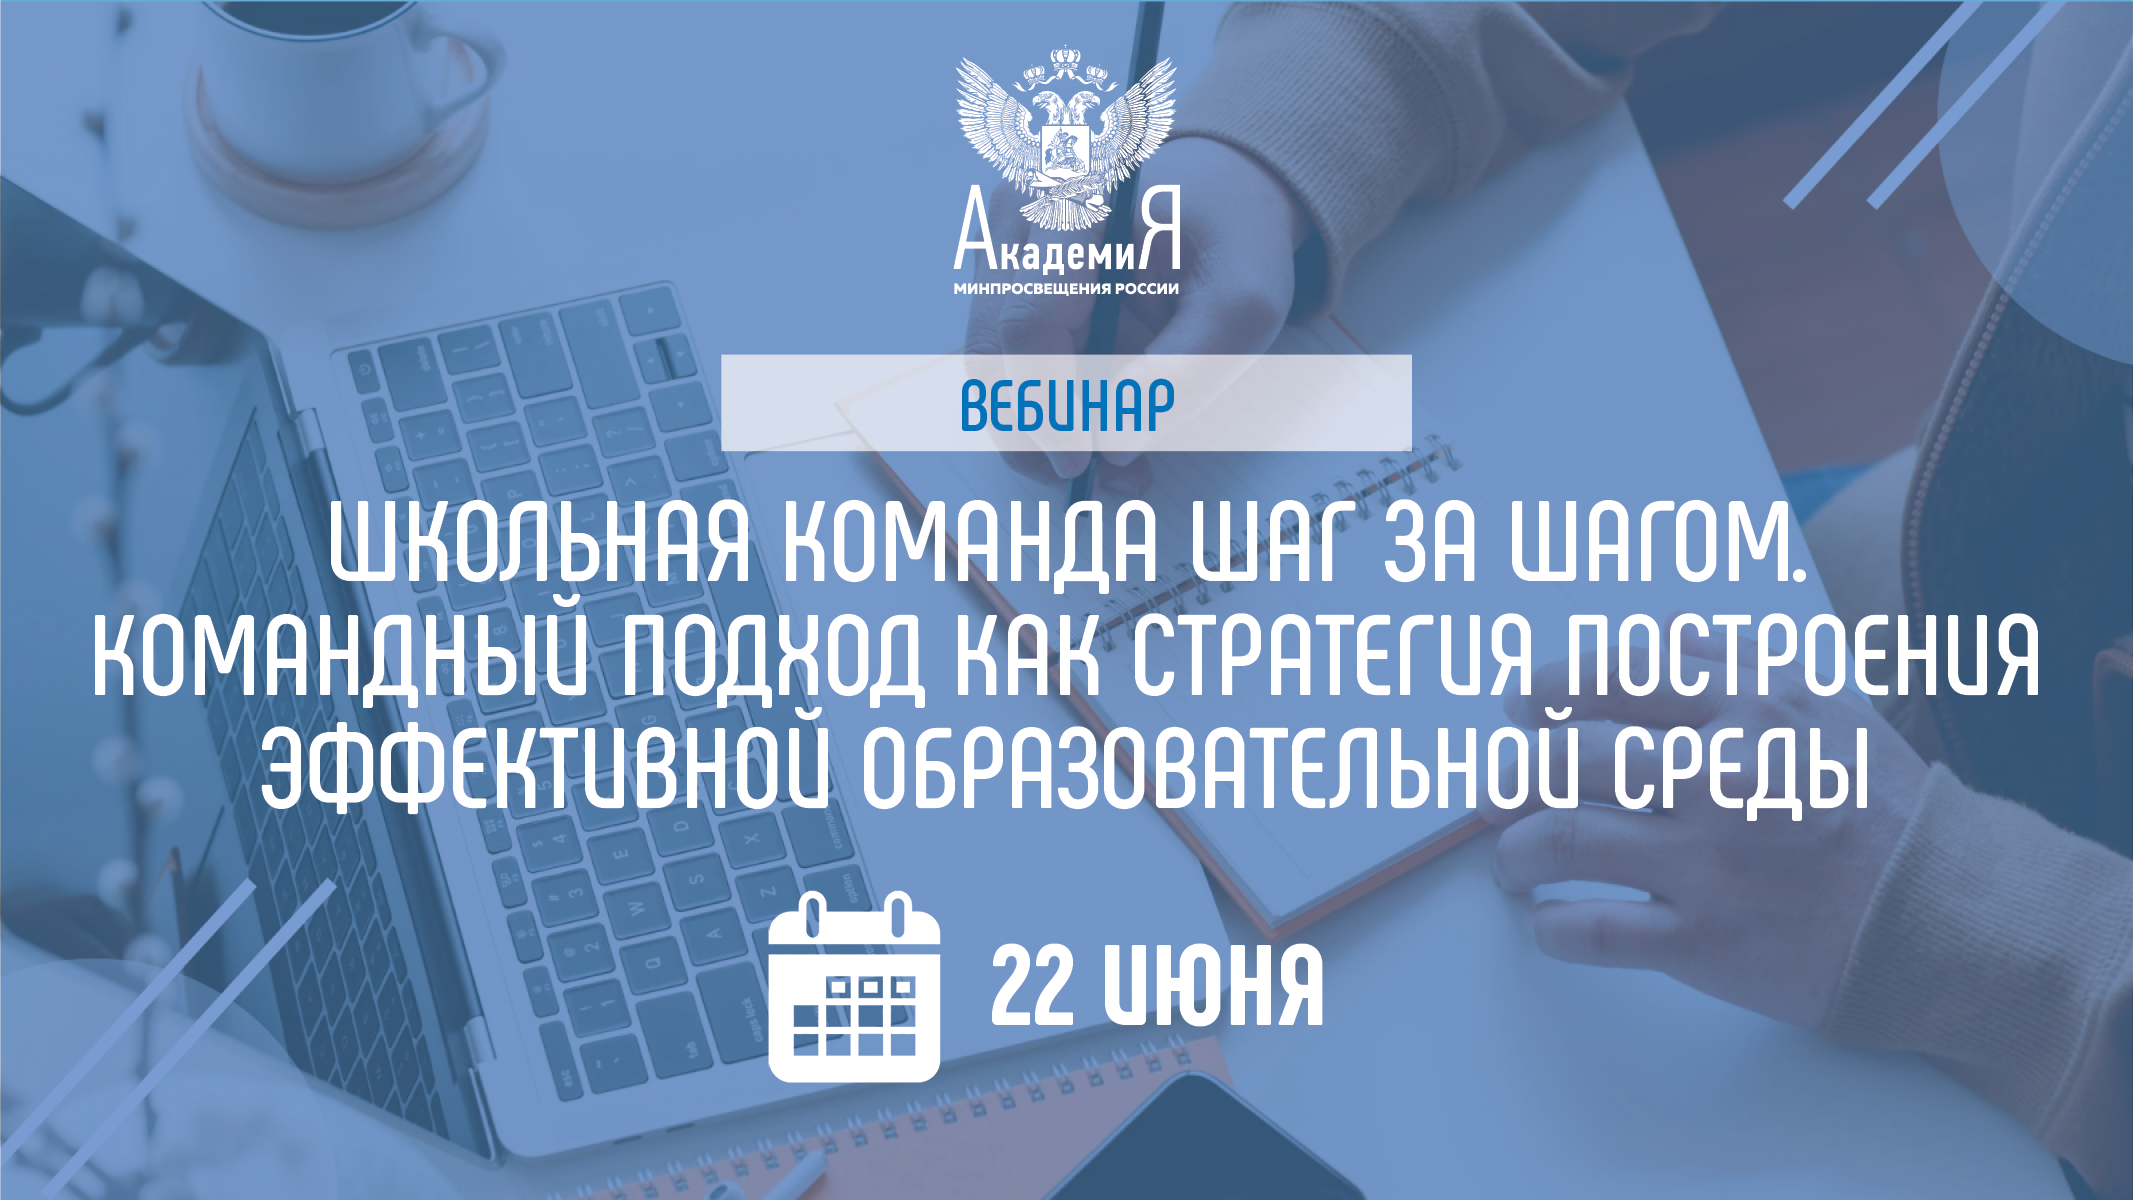 На вебинаре Академии Минпросвещения России 22 июня расскажут о командном подходе к решению педагогических задач  